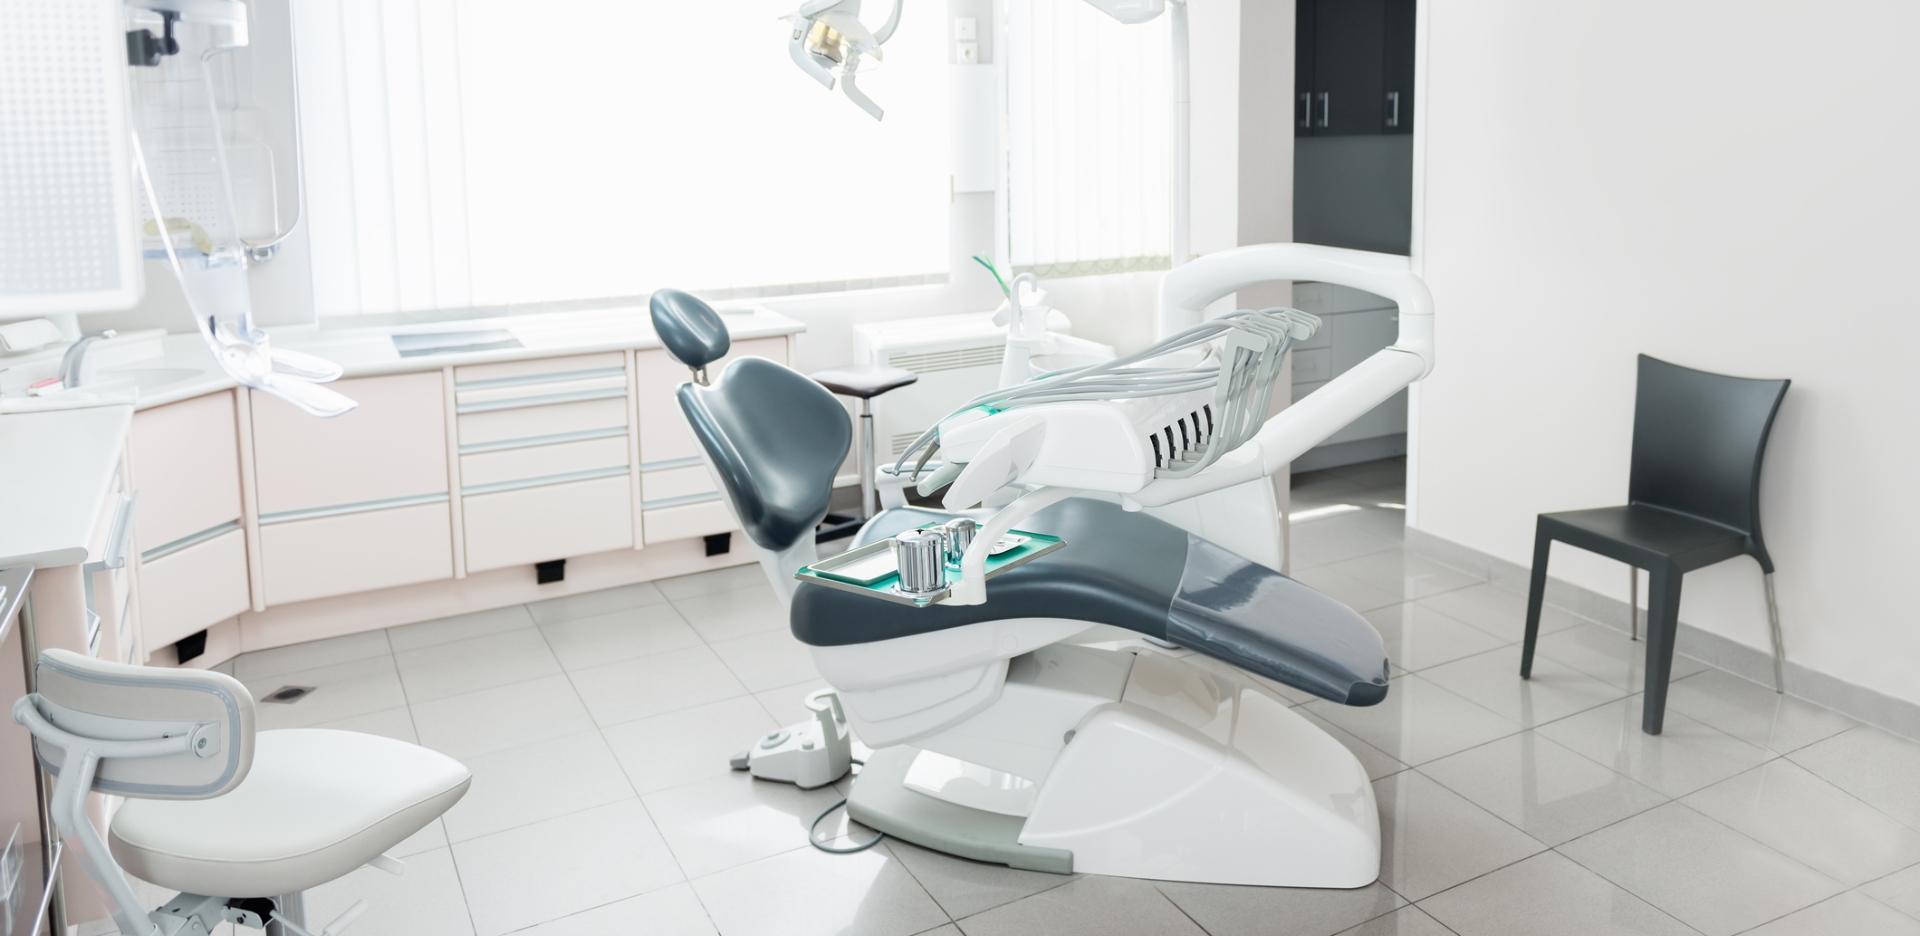 Gabinet stomatologiczny z krzesłem na środku